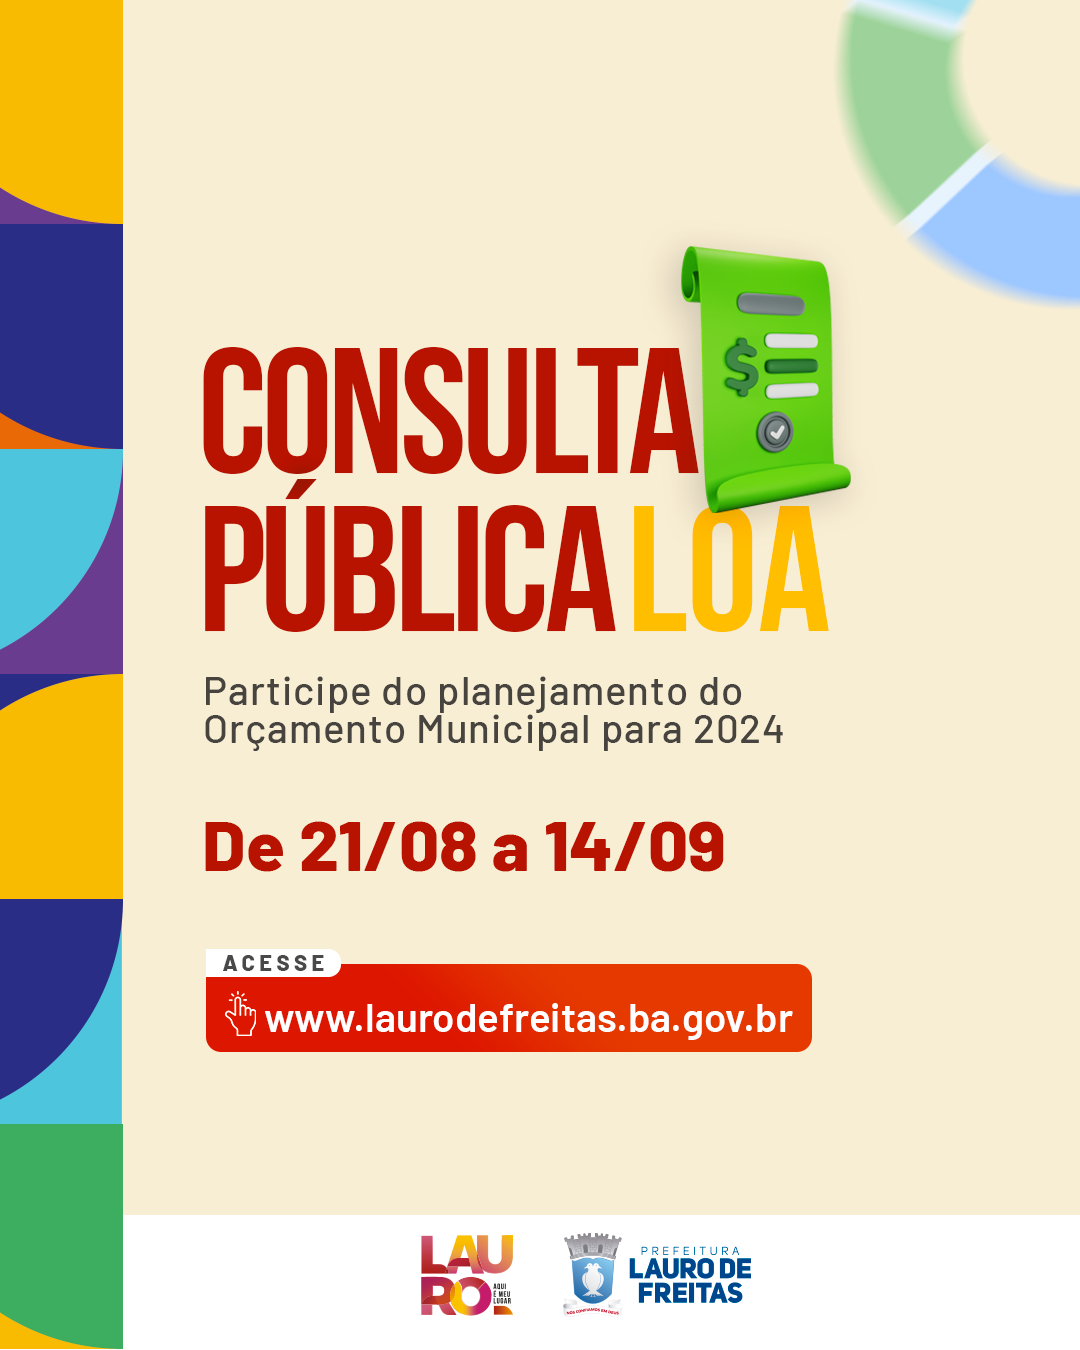  Prefeitura de Lauro de Freitas abre, nesta segunda-feira (21), consulta pública para participação popular na LOA 2024